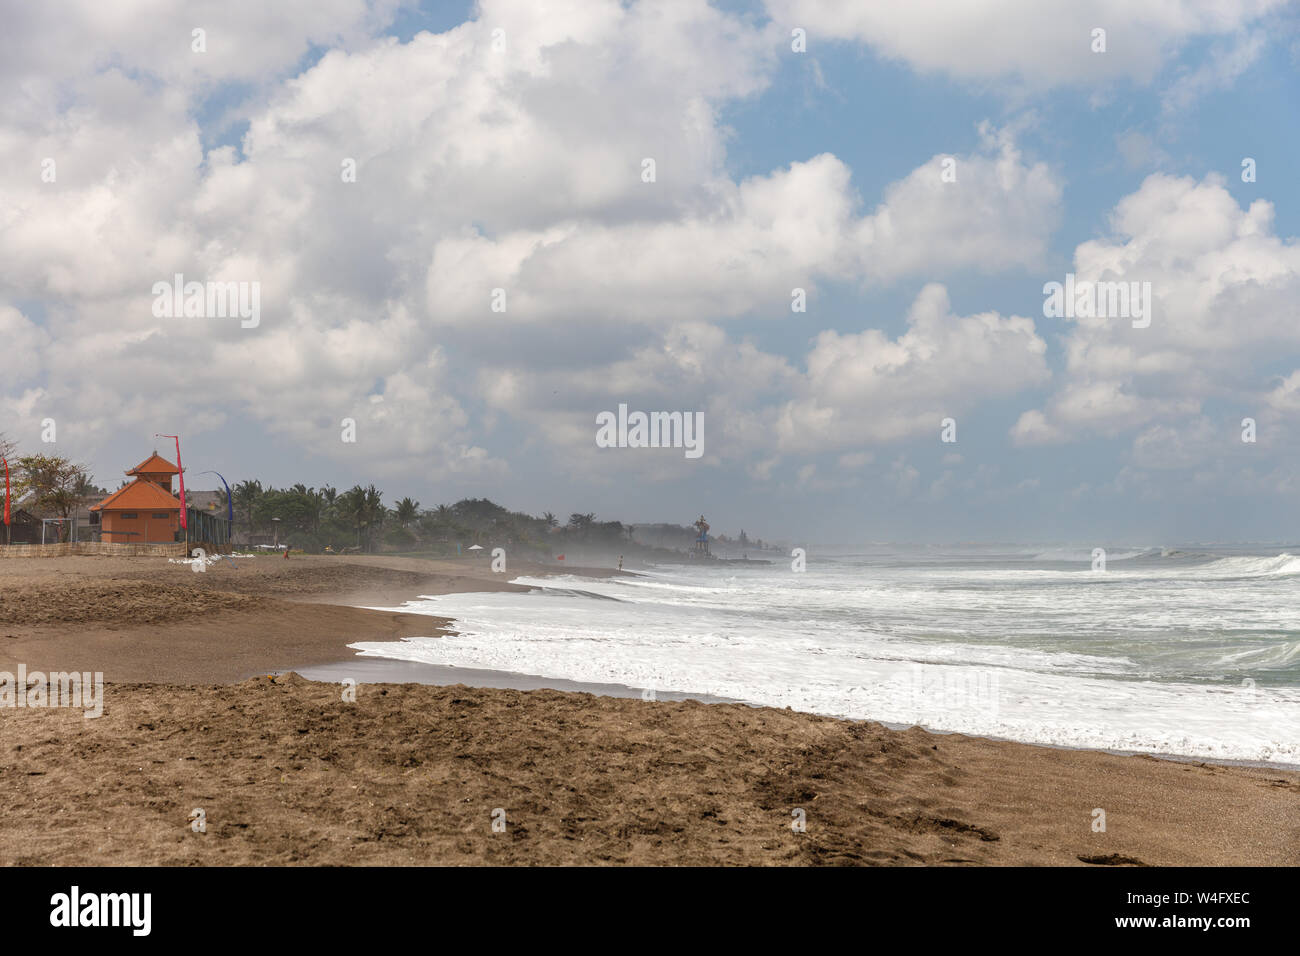 Anzeigen von Pantai Munggu Munggu (Strand), Bali, Indonesien. Vulkanischen schwarzen Sand, das Meer, die Wellen. Stockfoto